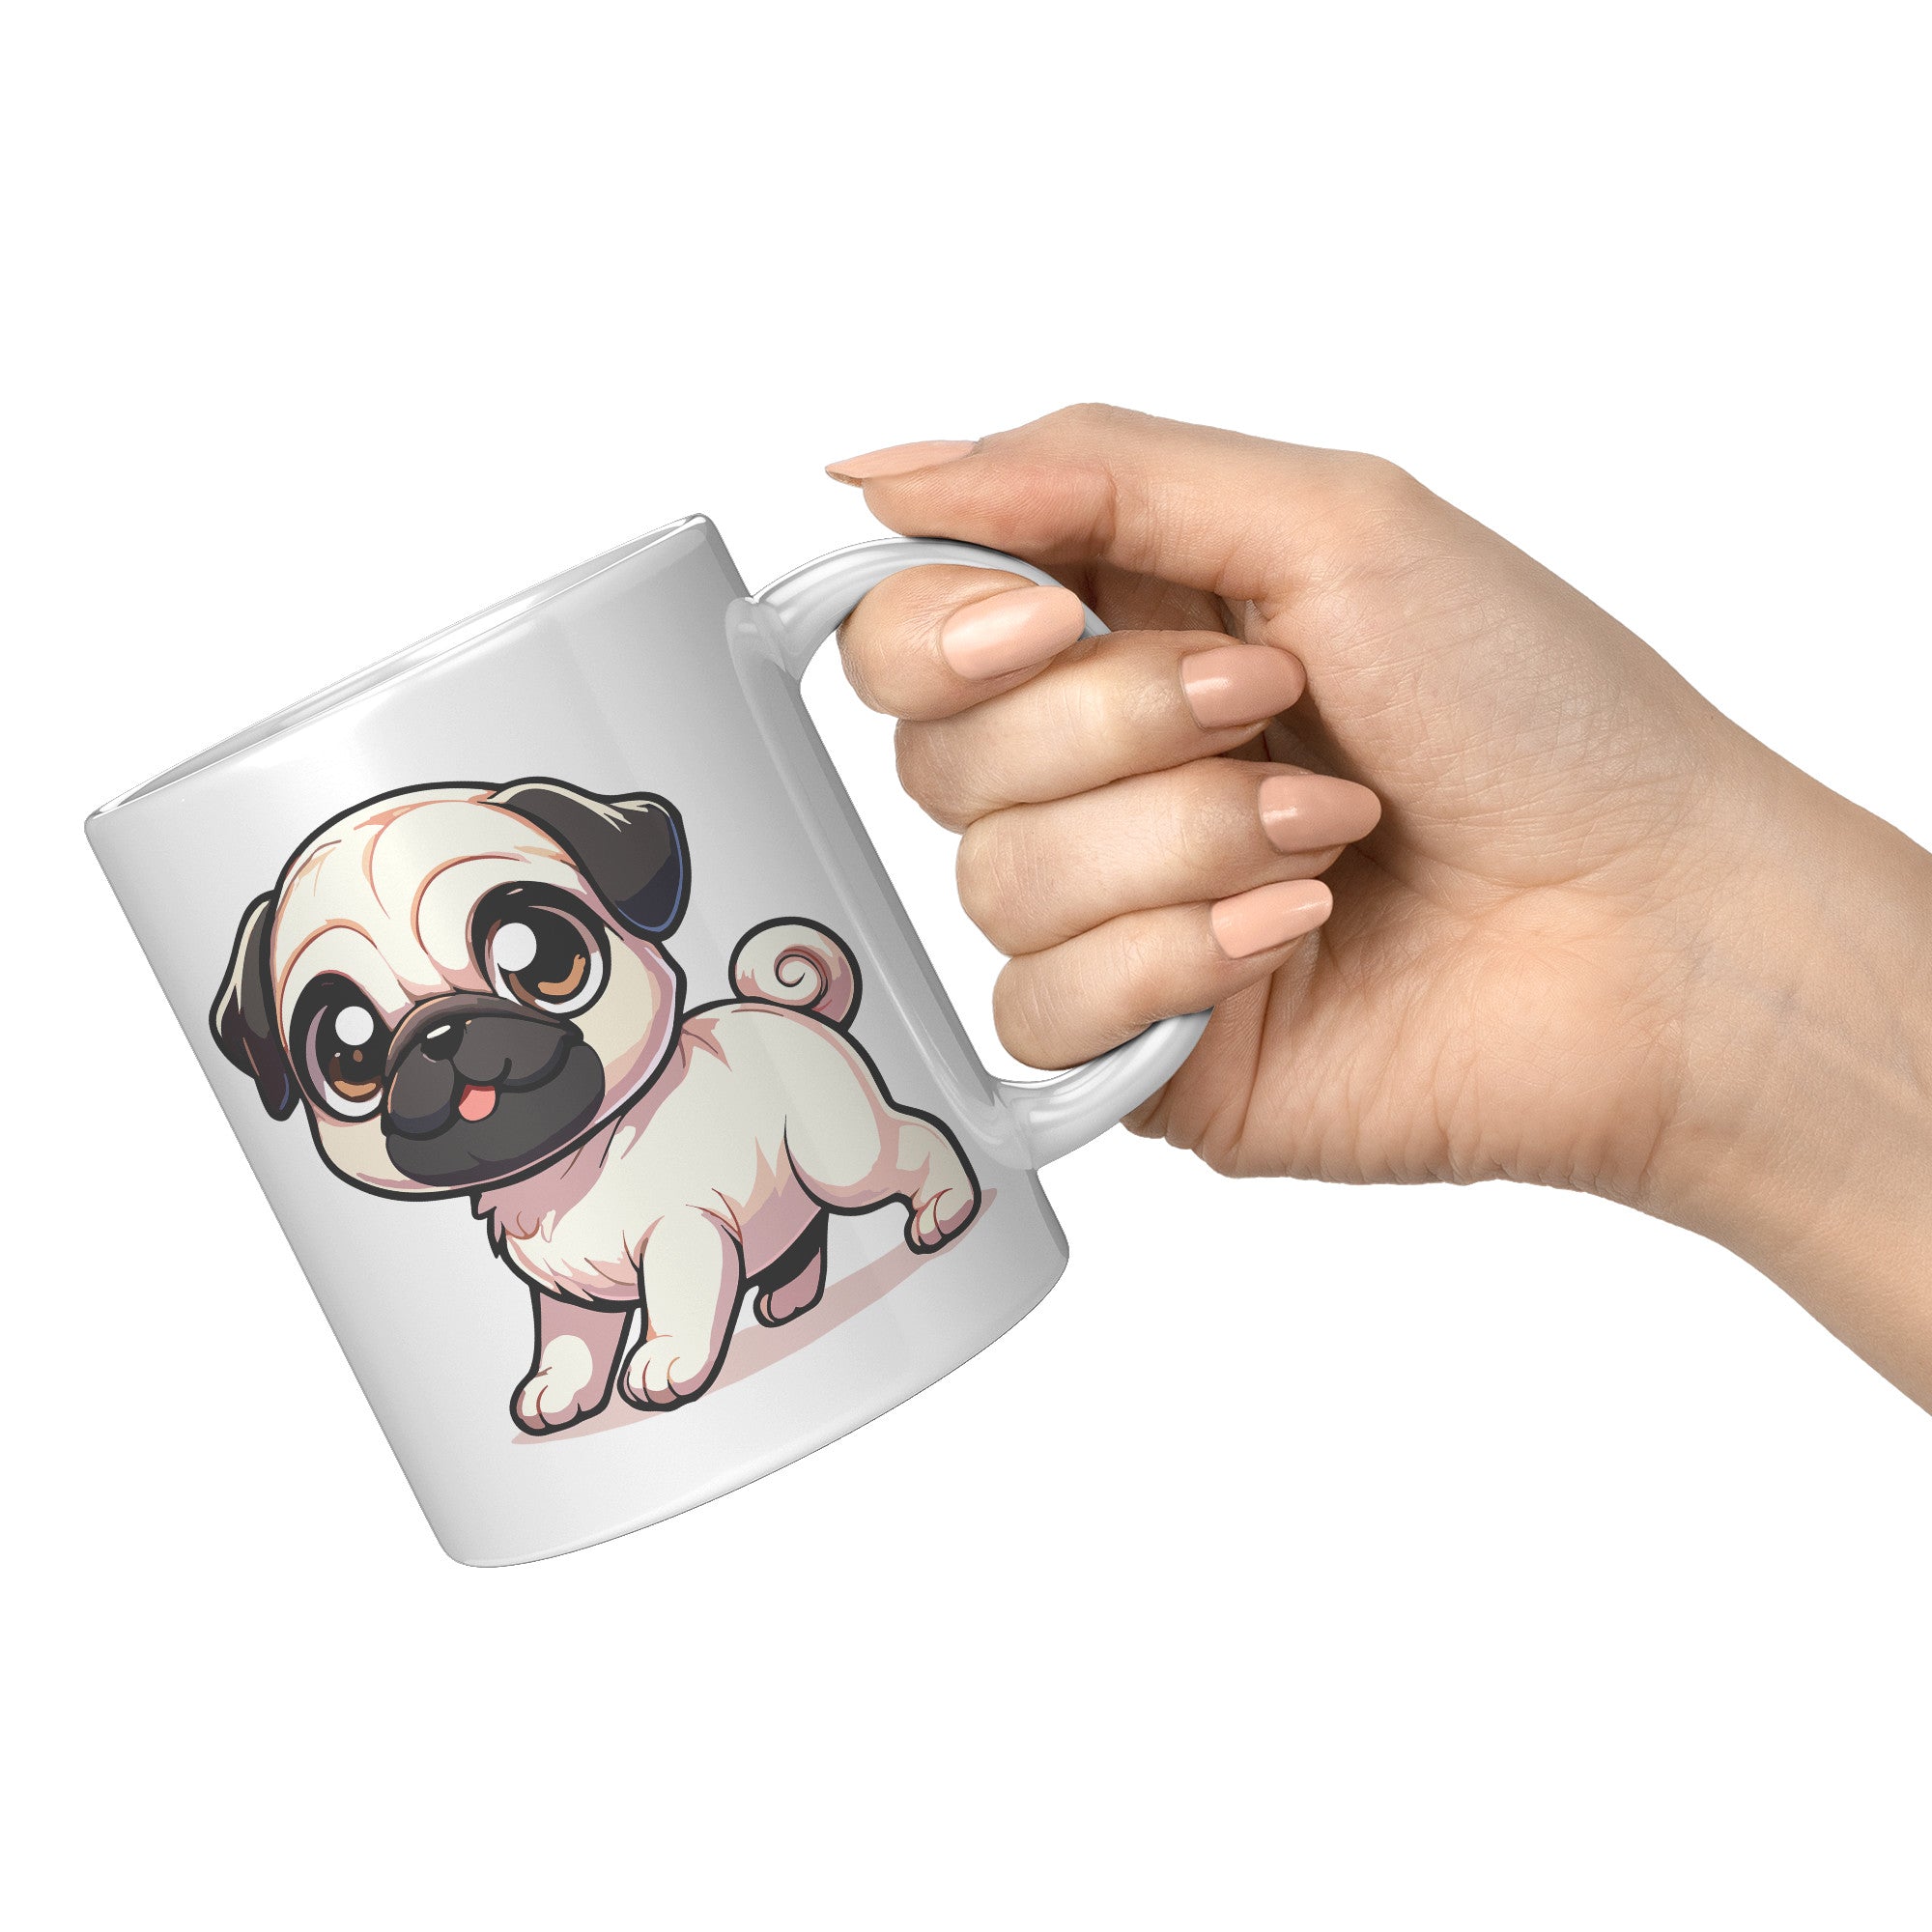 11oz Adorable Pug Cartoon Coffee Mug - Pug Lover Coffee Mug - Perfect Gift for Pug Owners - Cute Wrinkly Dog Coffee Mug" - R